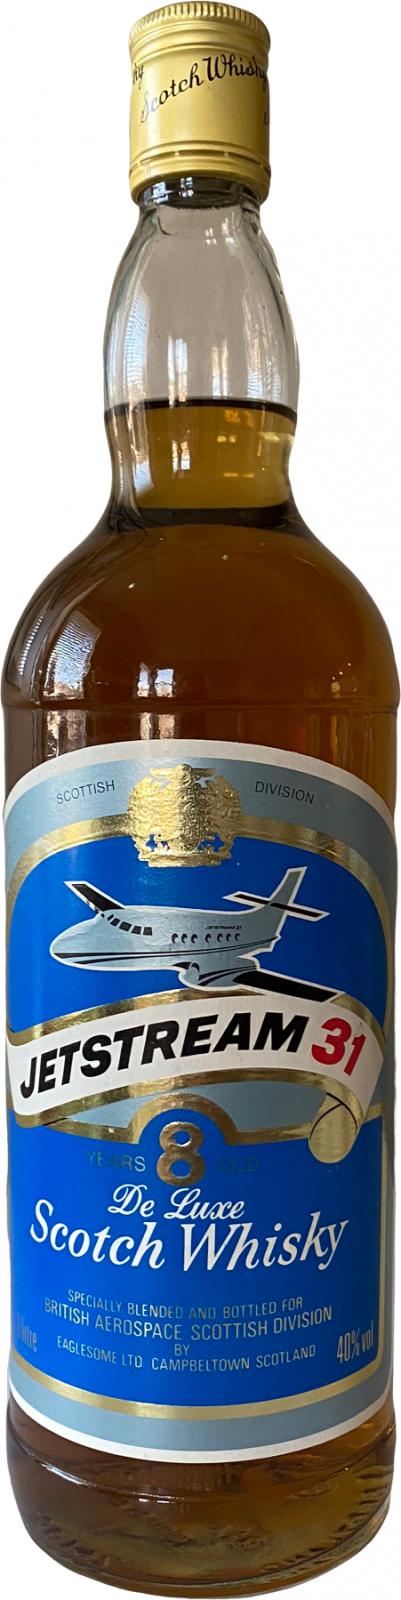 Eaglesome's Jetstream 31 Es British Aerospace Scottish Division 40% 1000ml